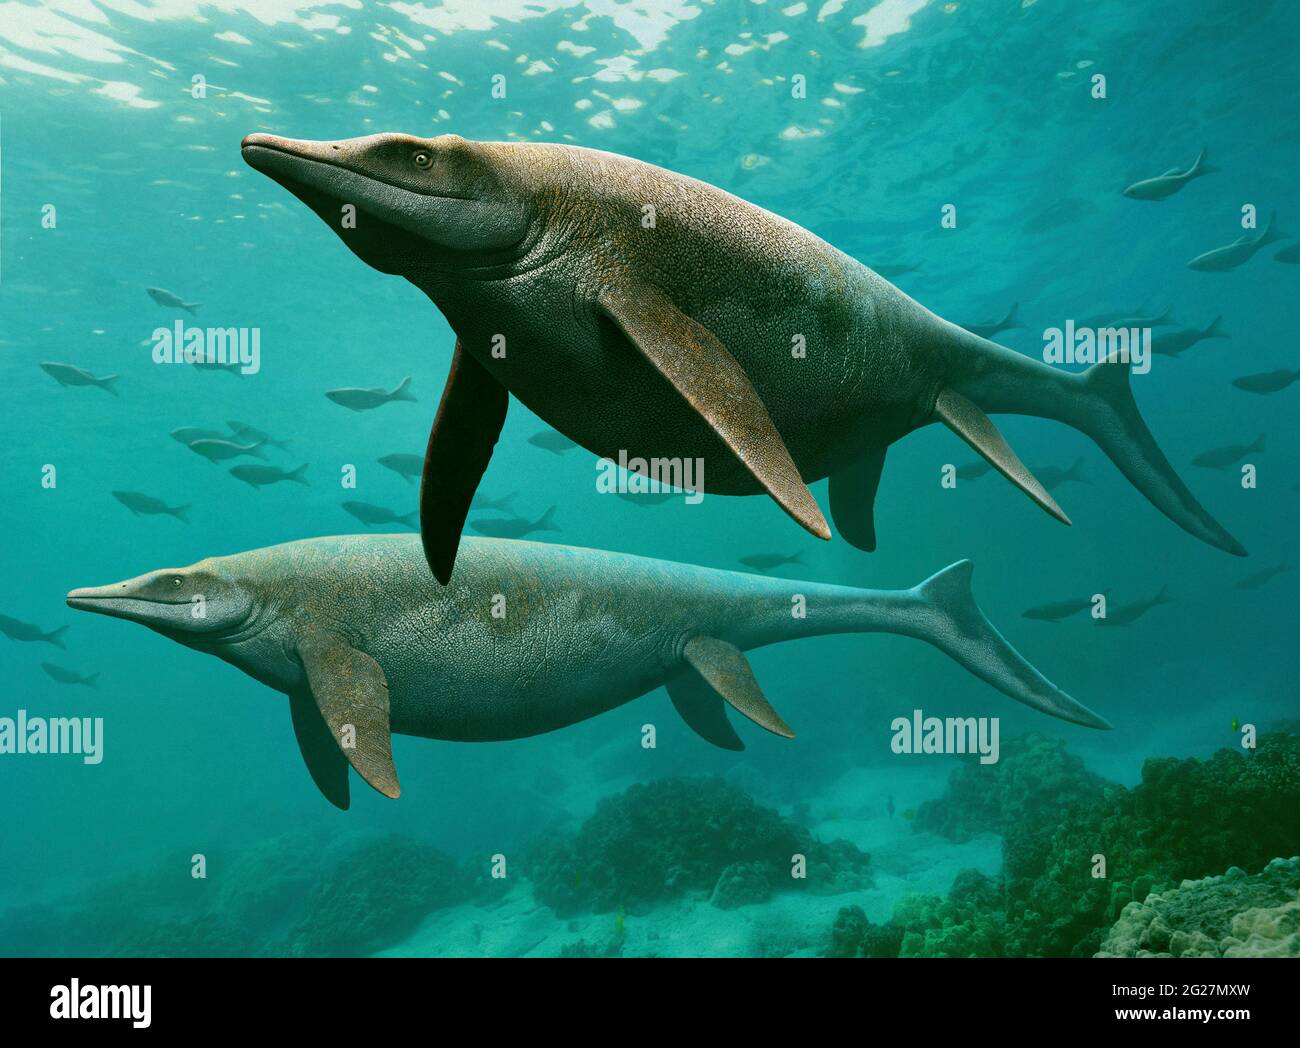 A pair of Guanlingsaurus swimming underwater. Stock Photo